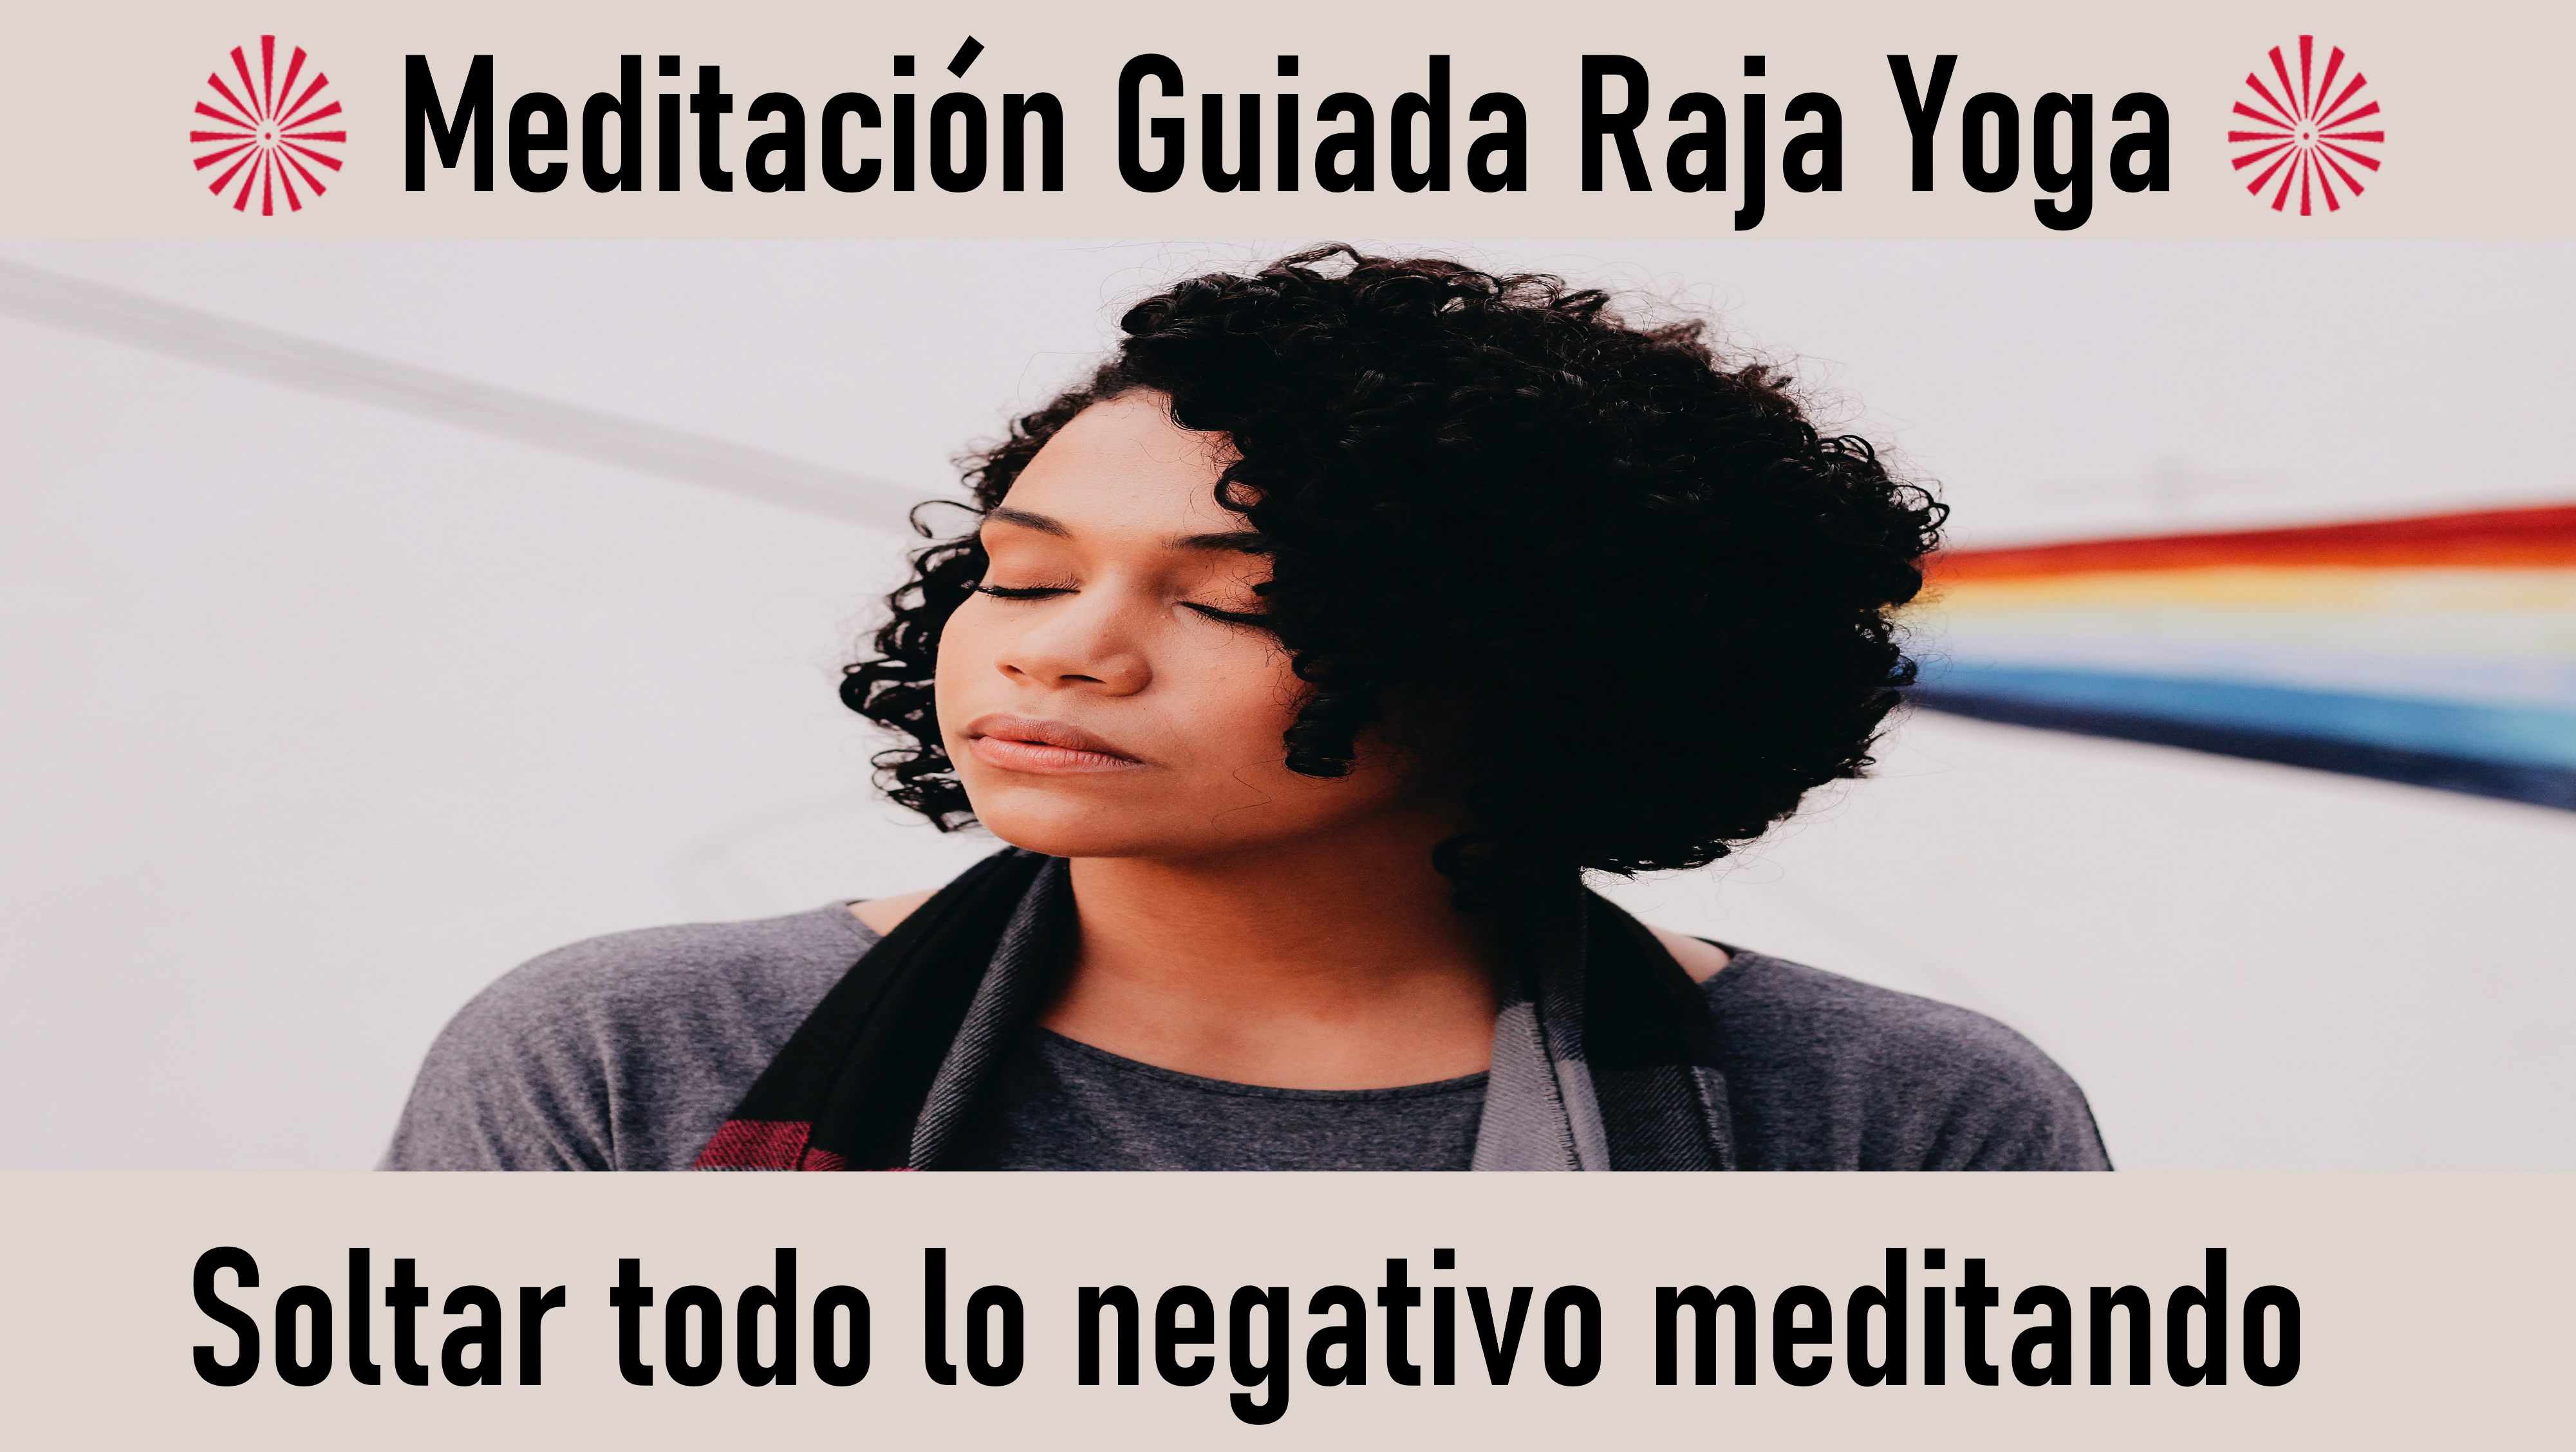 Meditación Raja Yoga: Soltar todo lo negativo meditando (30 Septiembre 2020) On-line desde Sevilla